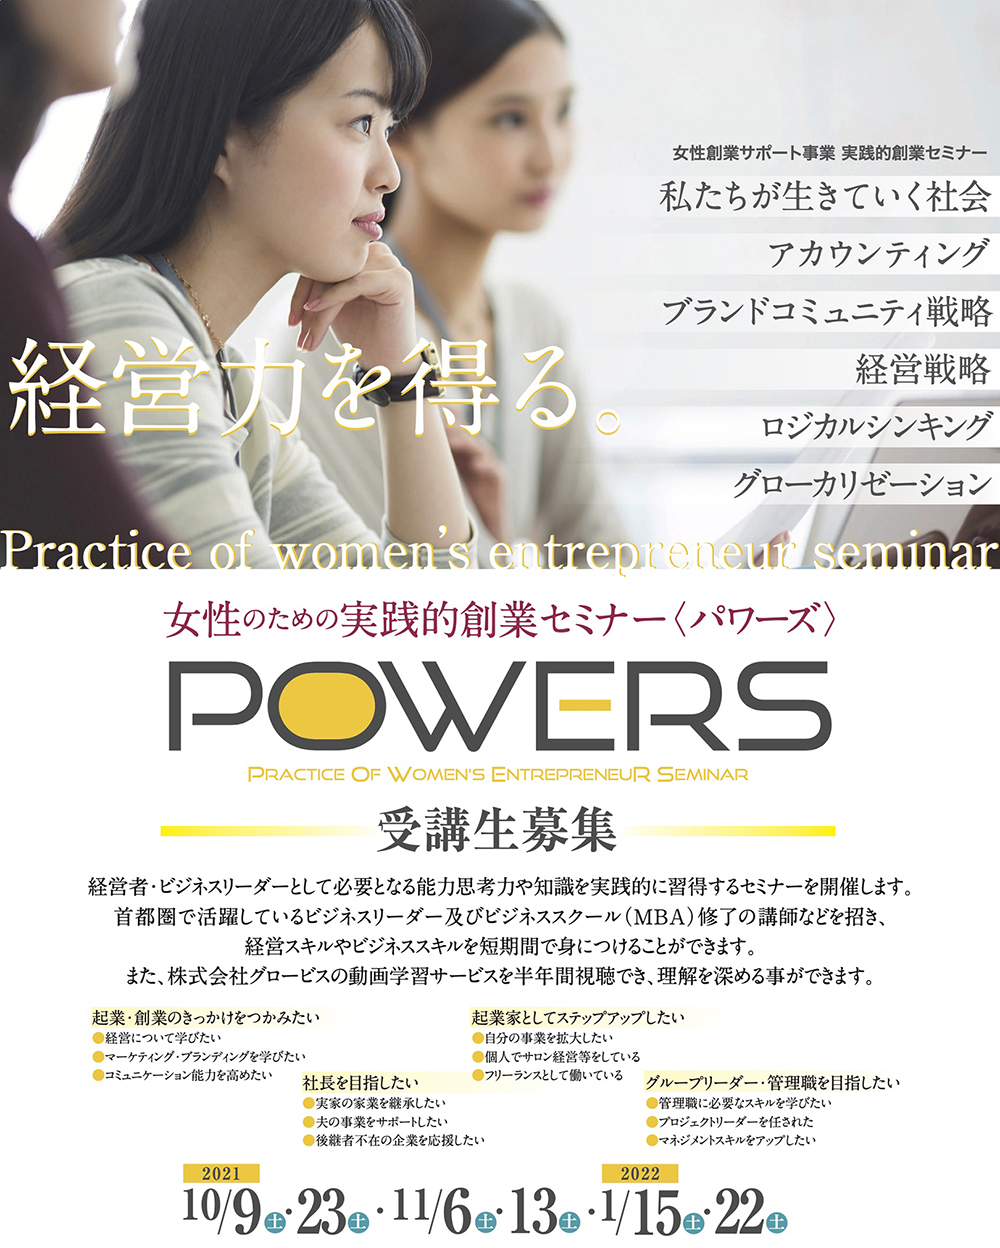 山口県・POWERS女性創業者セミナーにて「ブランド戦略の基本と実践」の講演を行いました。